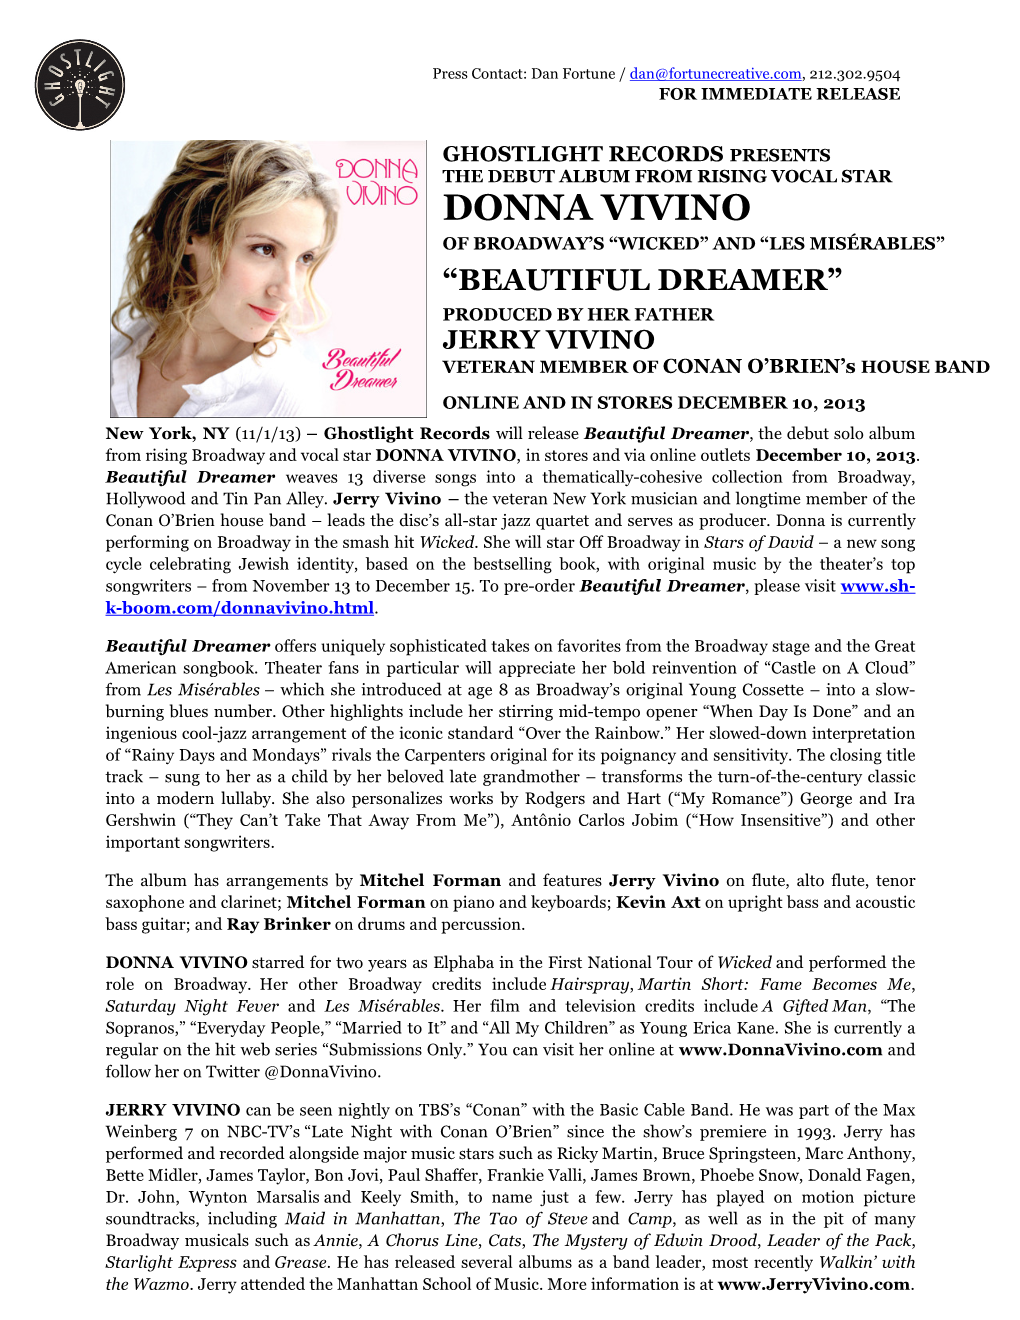 Donna Vivino